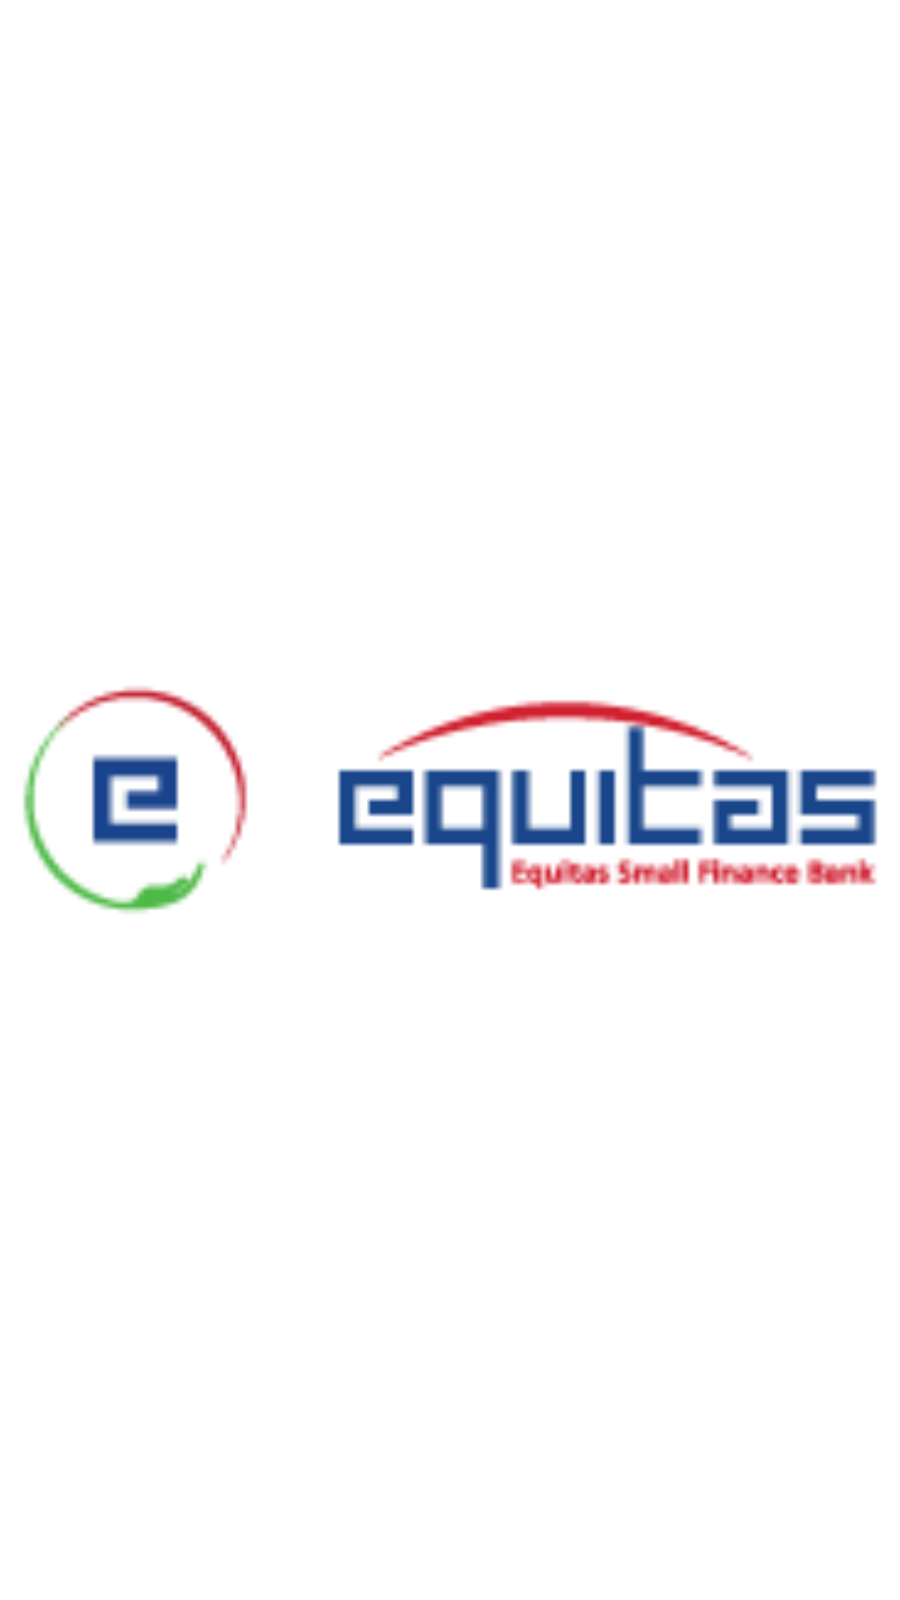 Equitas Small Finance Bank - Company Profile - Tracxn